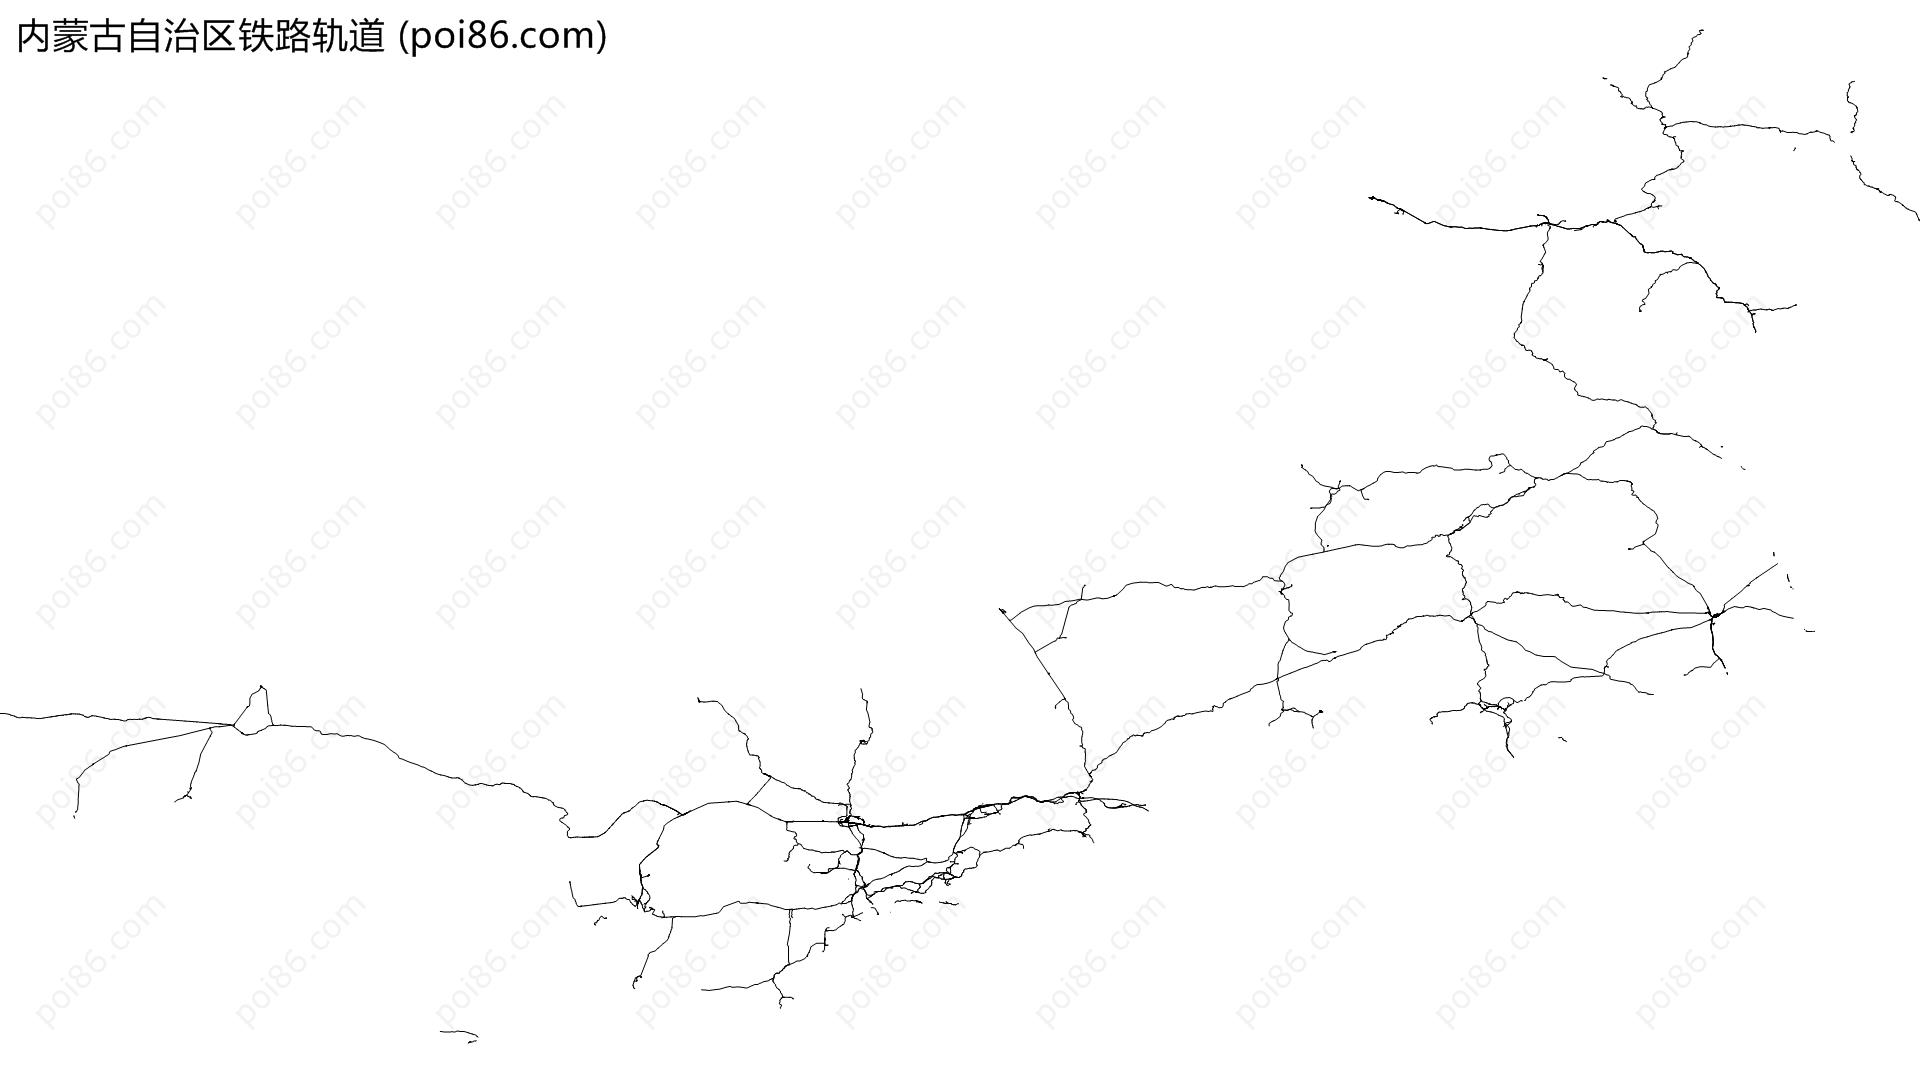 内蒙古自治区铁路轨道地图